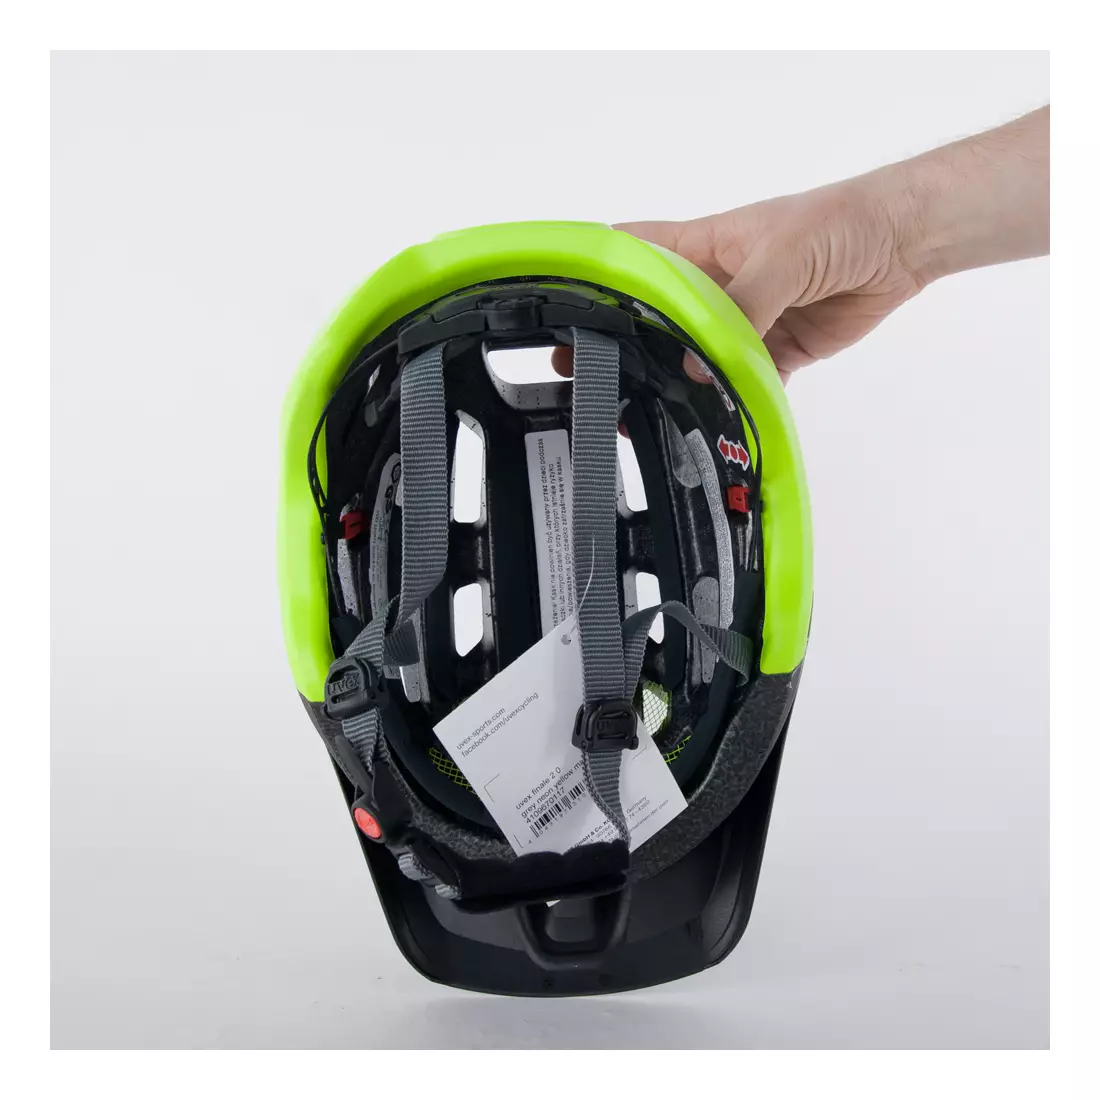 Cyklistická přilba enduro UVEX FINALE 2.0 černá matná fluorově zelená